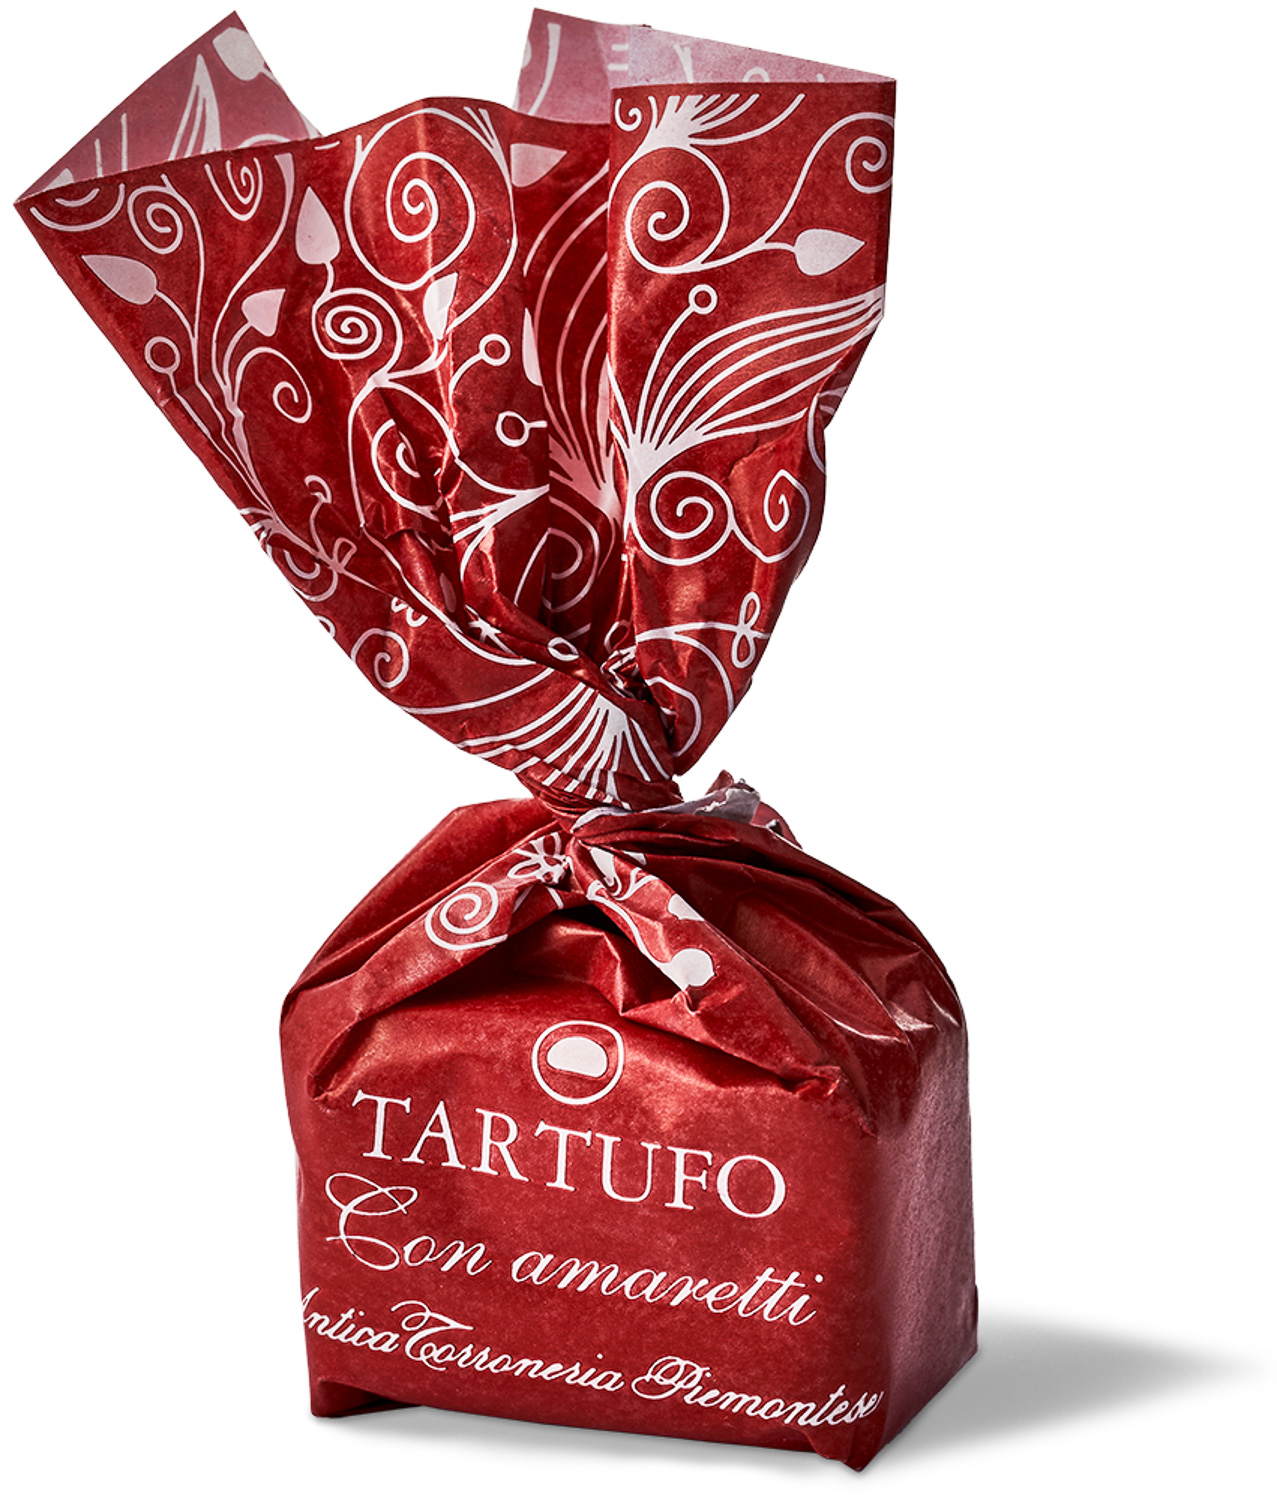 Antica Torroneria - Tartufo Con Amaretti